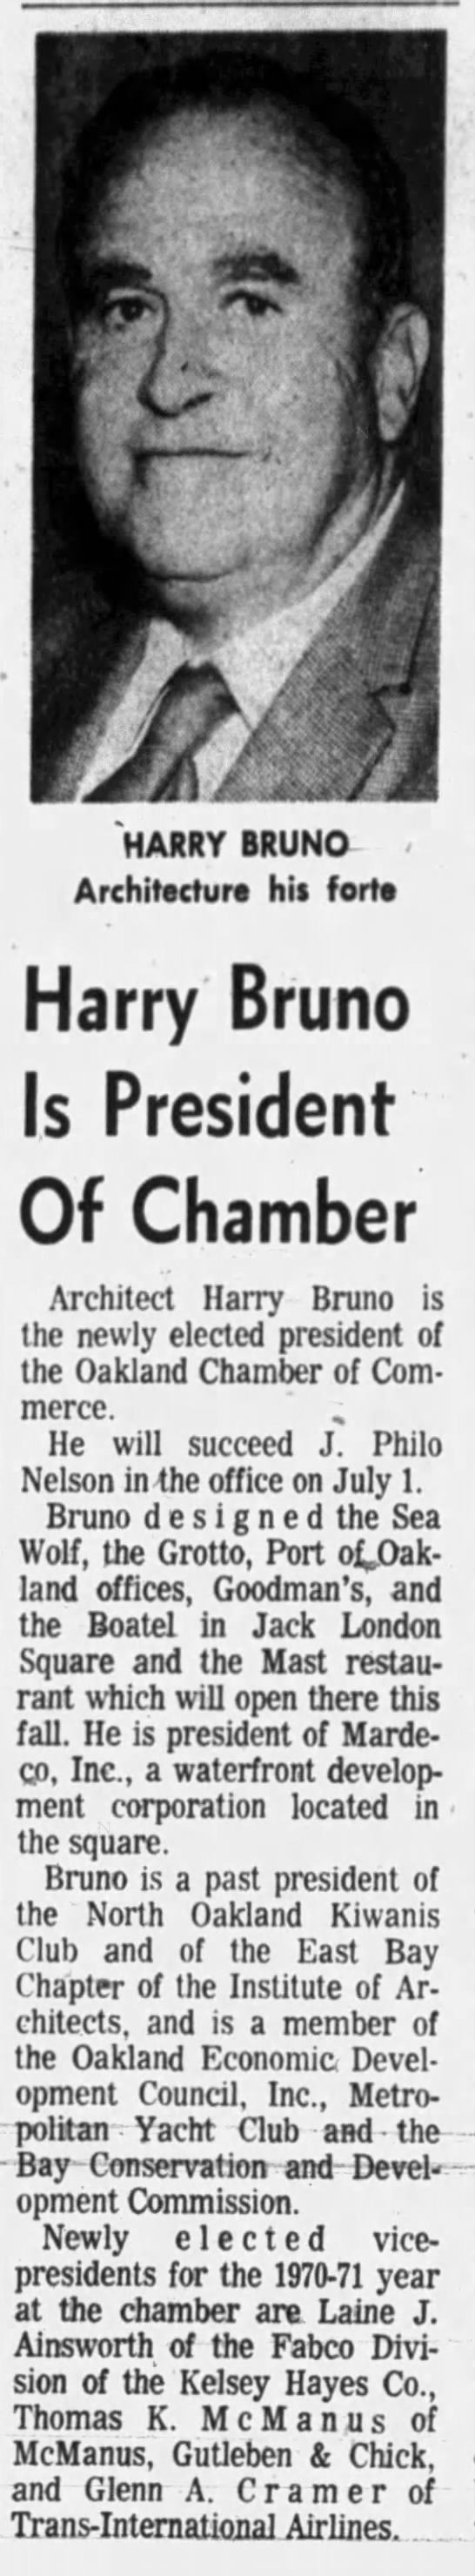 “Harry Bruno Named President of Oakland Chamber of Commerce,” June 16, 1970. p. 13. - 